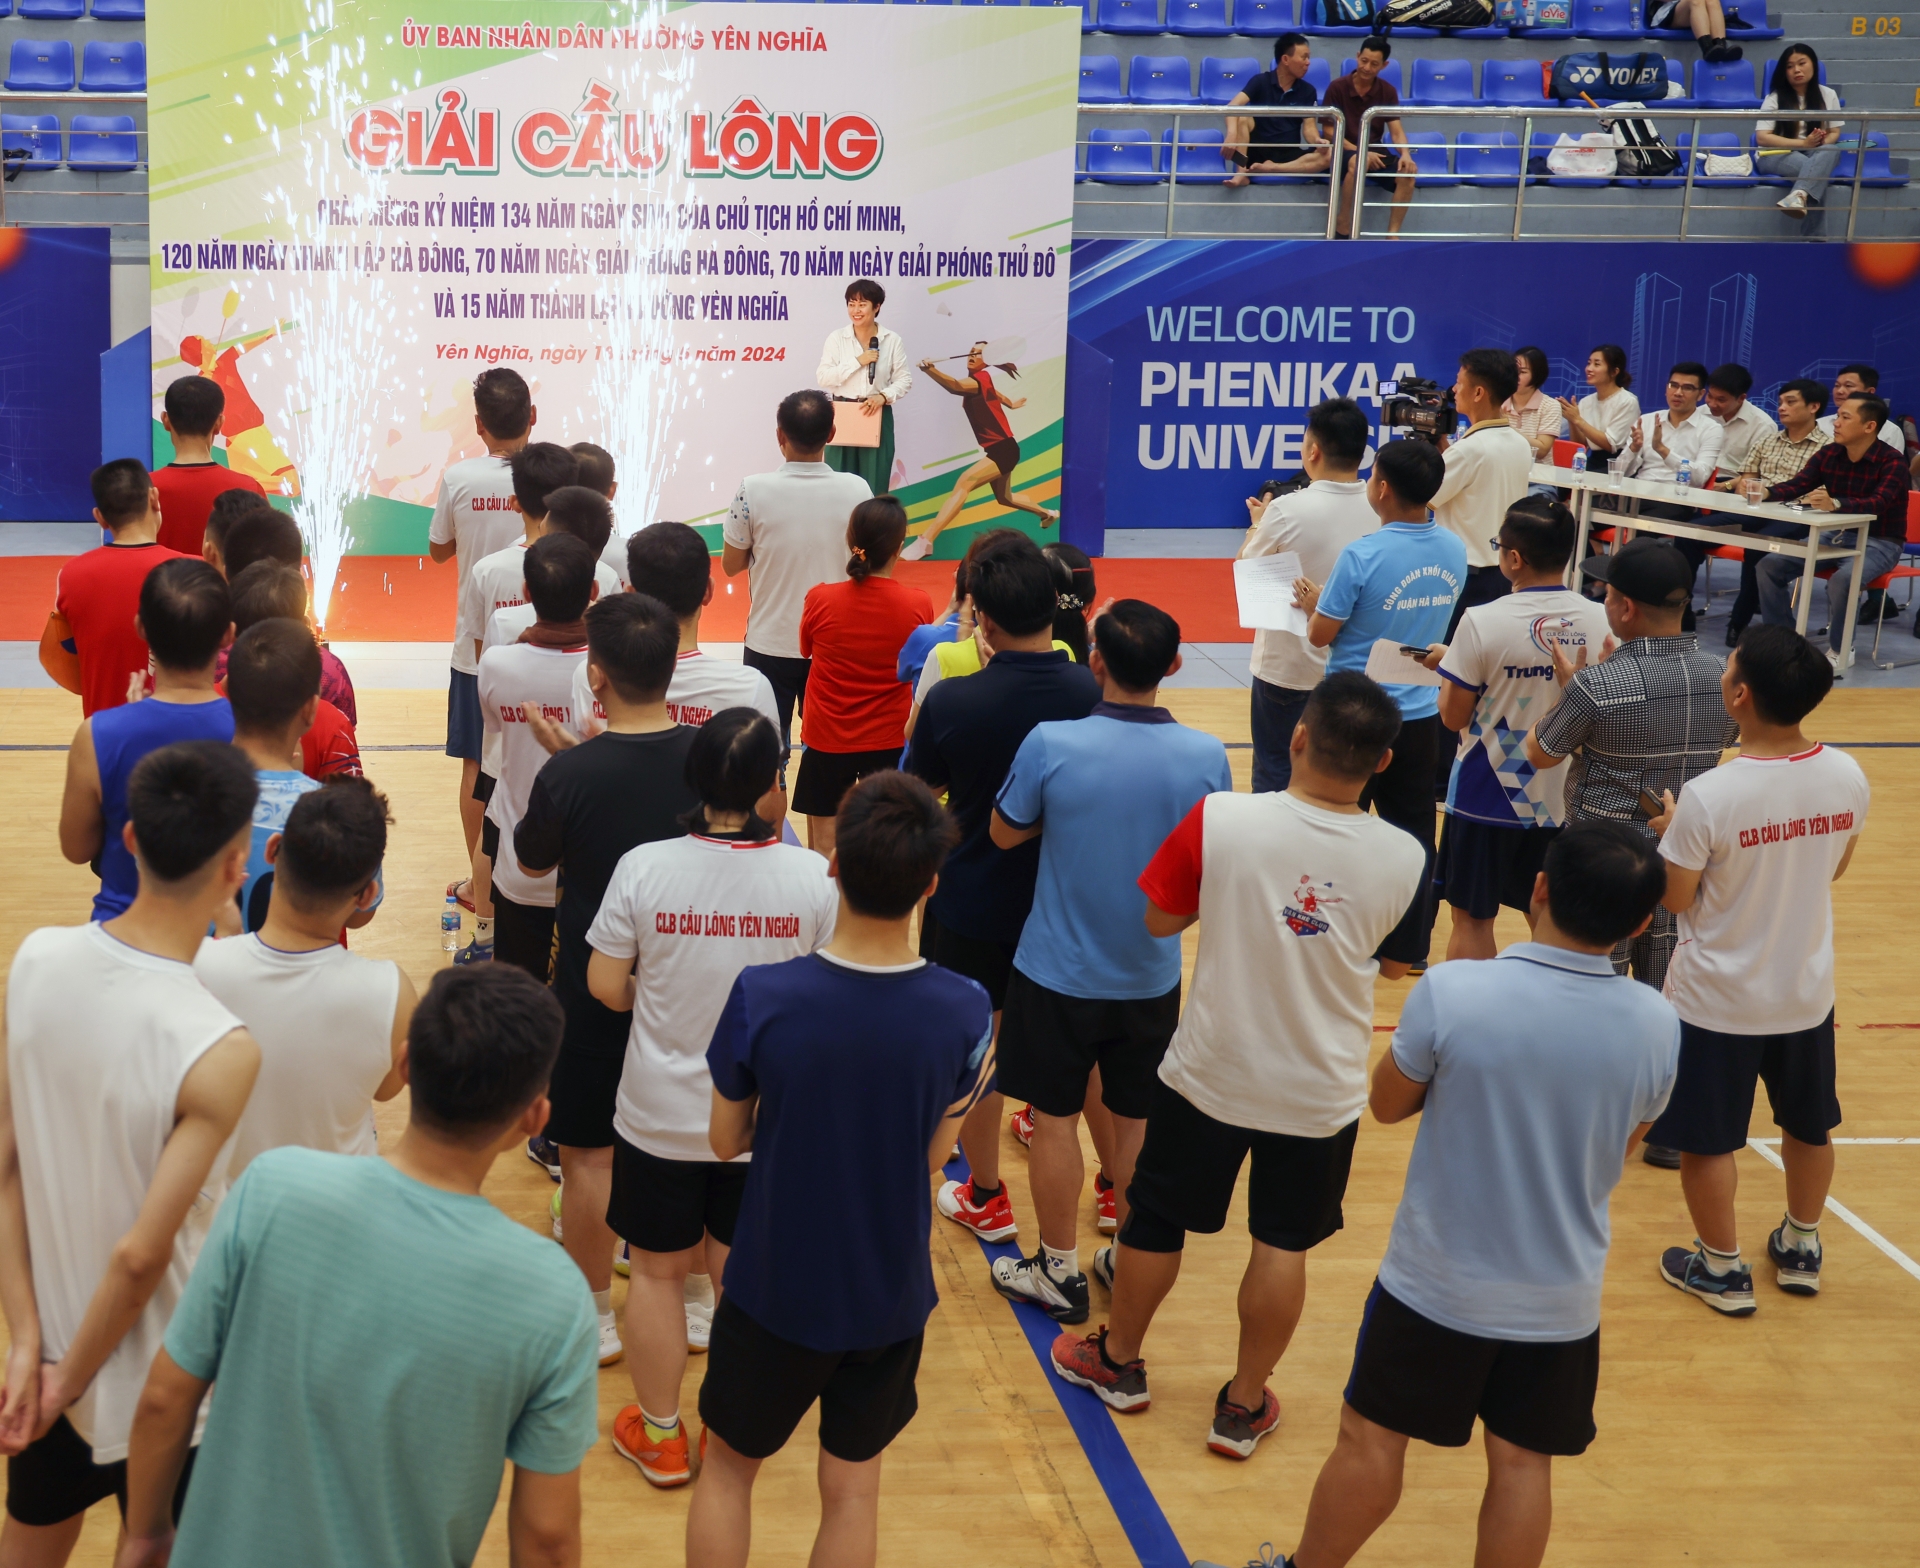 Giải Cầu lông các Câu lạc bộ phường Yên Nghĩa thành công, tạo sự chuyển biến mạnh mẽ trong phong trào thể dục thể thao